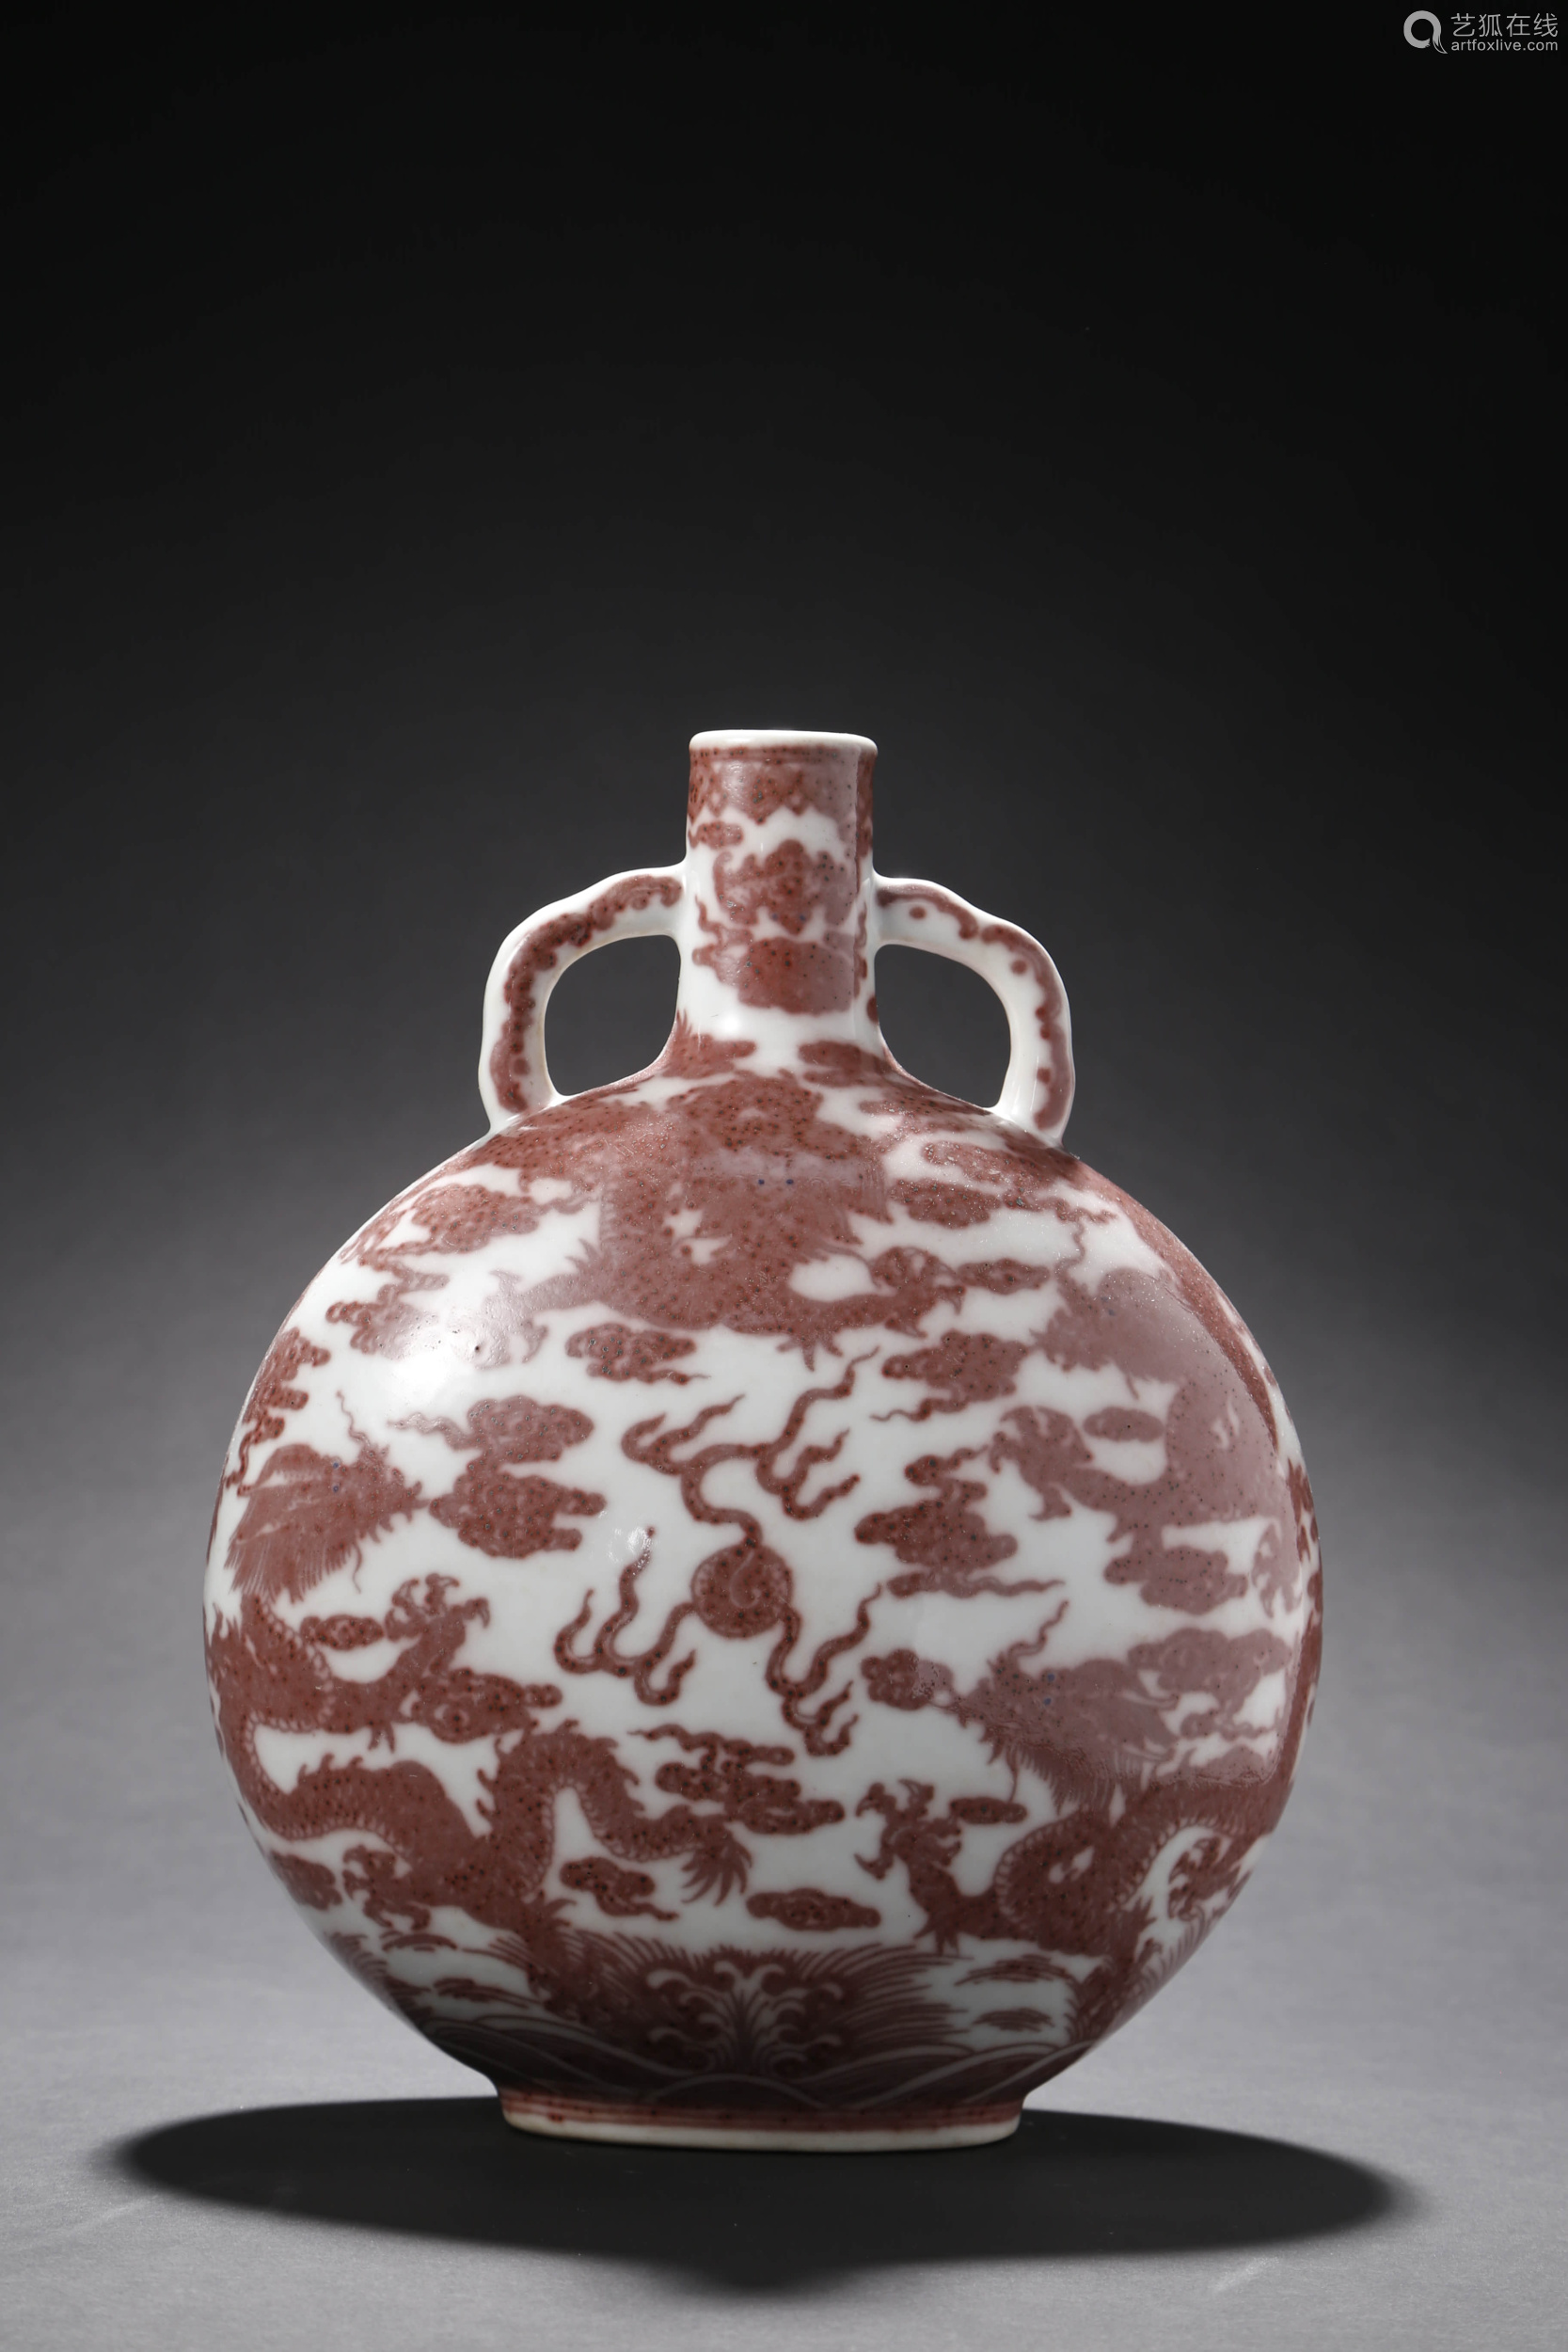 中国古美術月白釉弦紋瓶白泥天球瓶骨董年代品清時代-